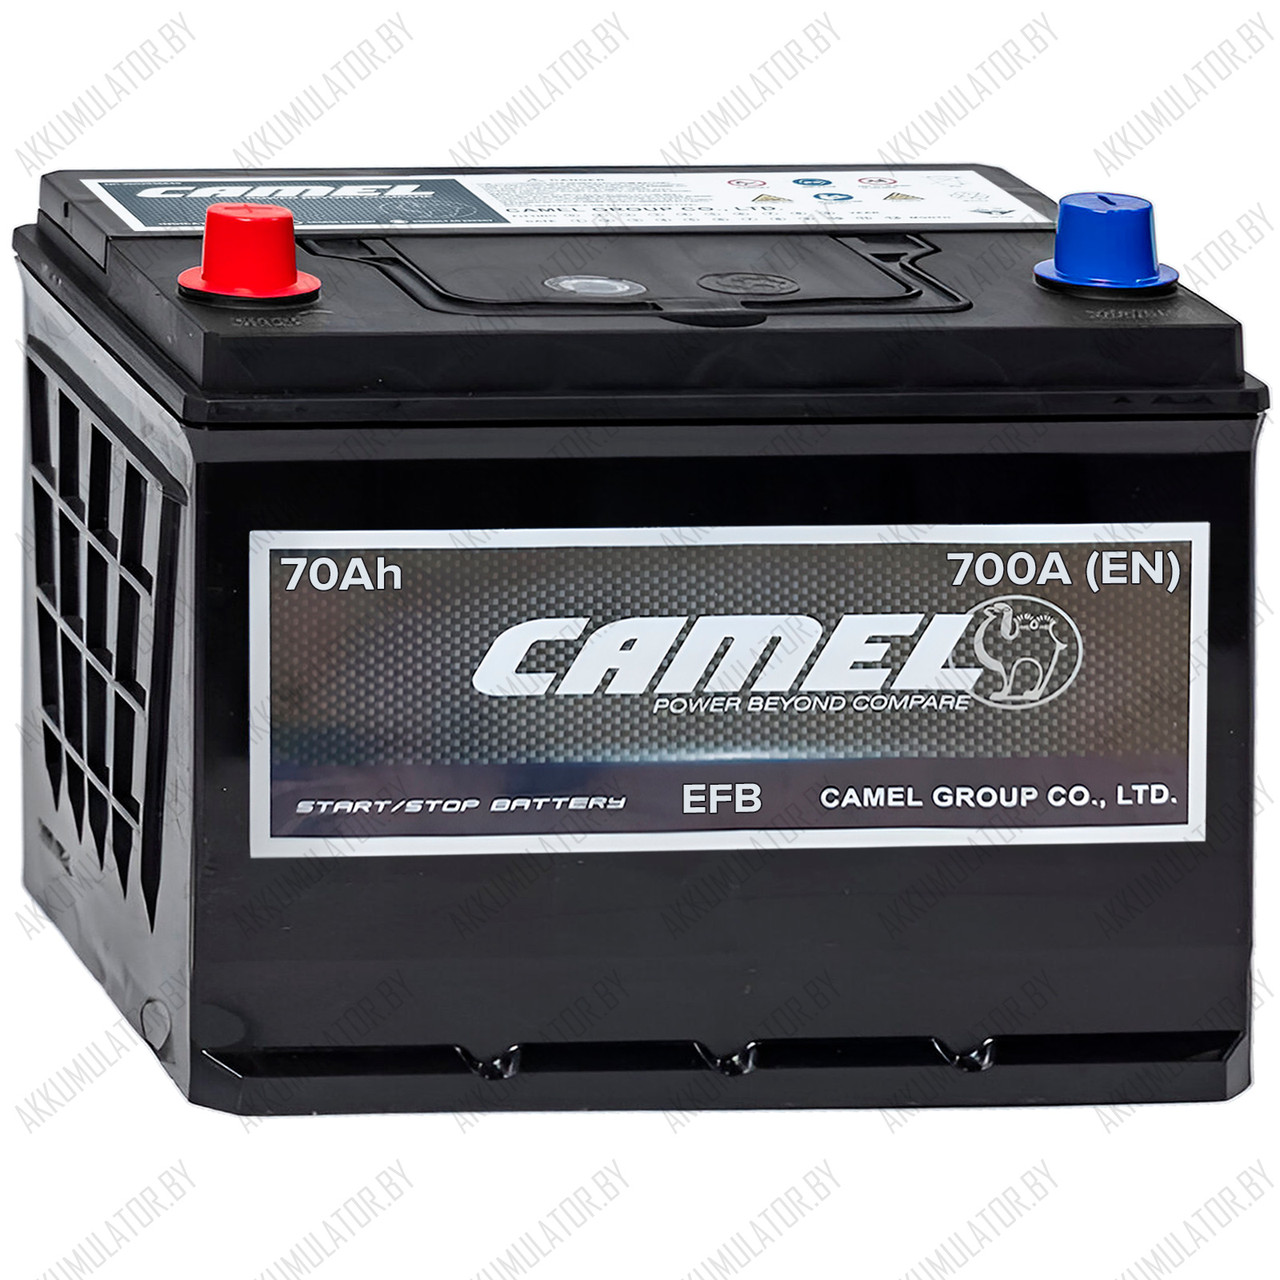 Аккумулятор Camel Asia EFB / 70Ah / 700А / Прямая полярность